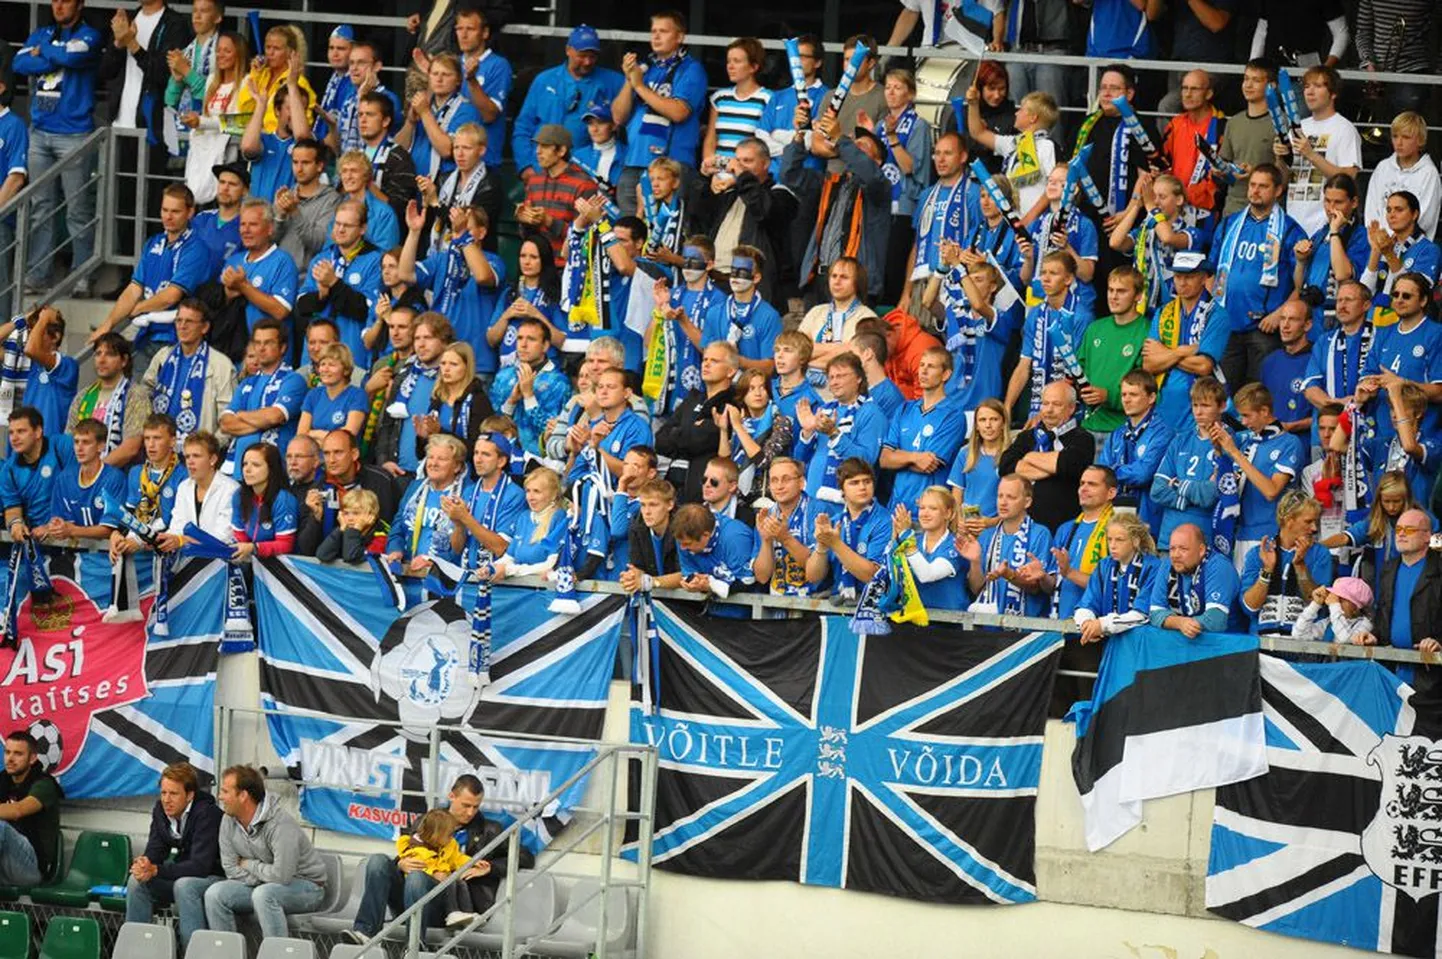 Kui Eesti jalgpallikoondise mängudel on põhjatribüün alati olnud täidetud rahvusvärvides fännidest, siis      loodetavasti leiavad toetajad tee sinna ka noortekoondise mängudeks.